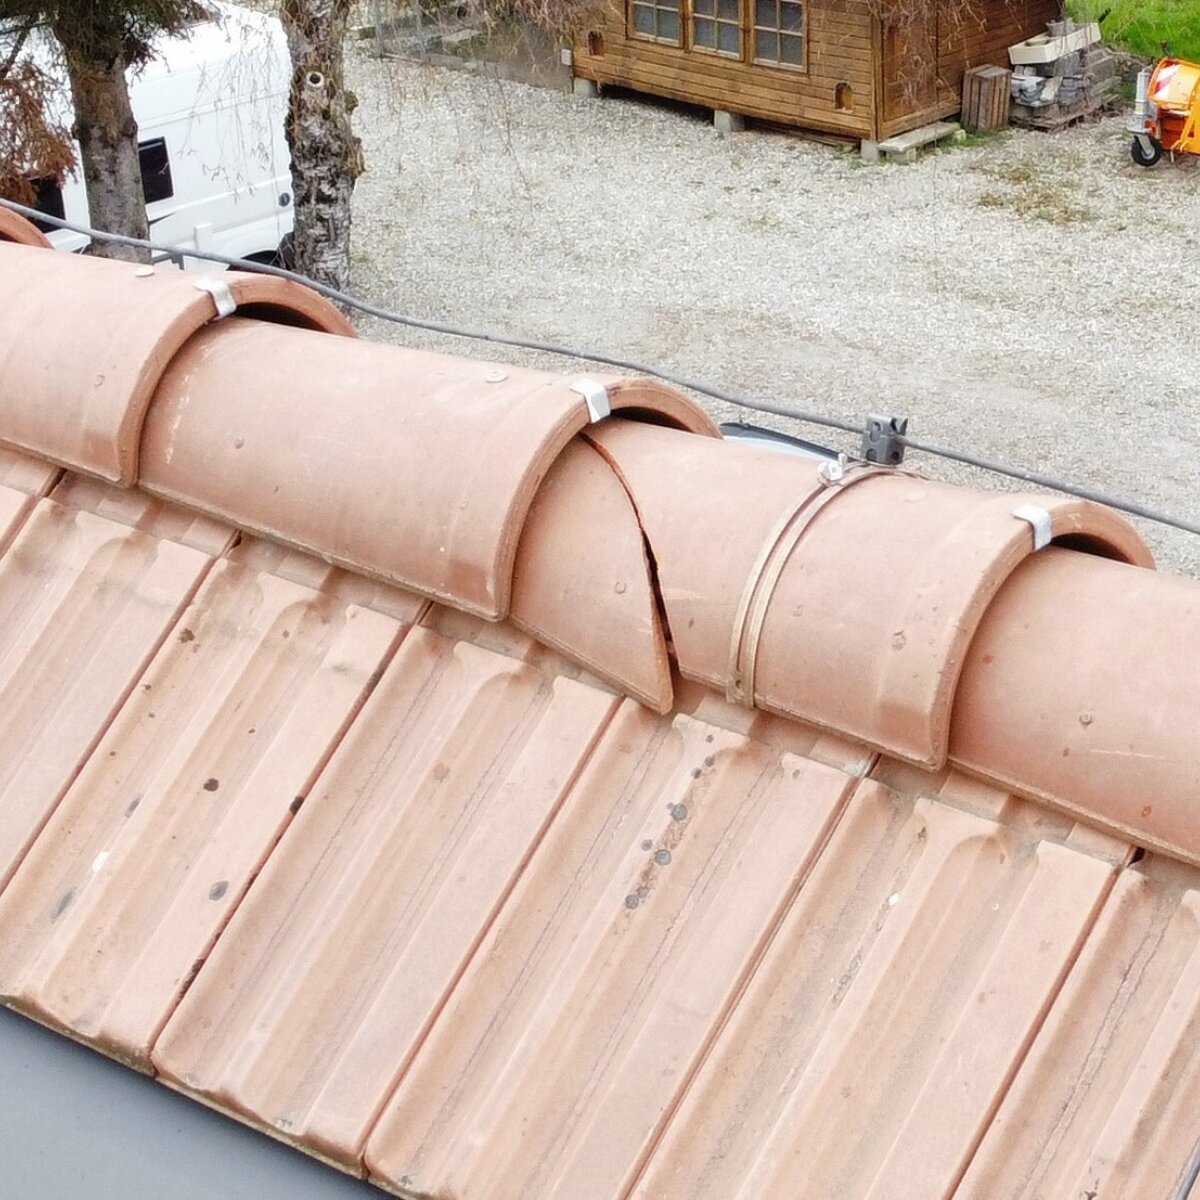 Lebensdauer dach verlaengern risse dachziegel erkennen ersetzen